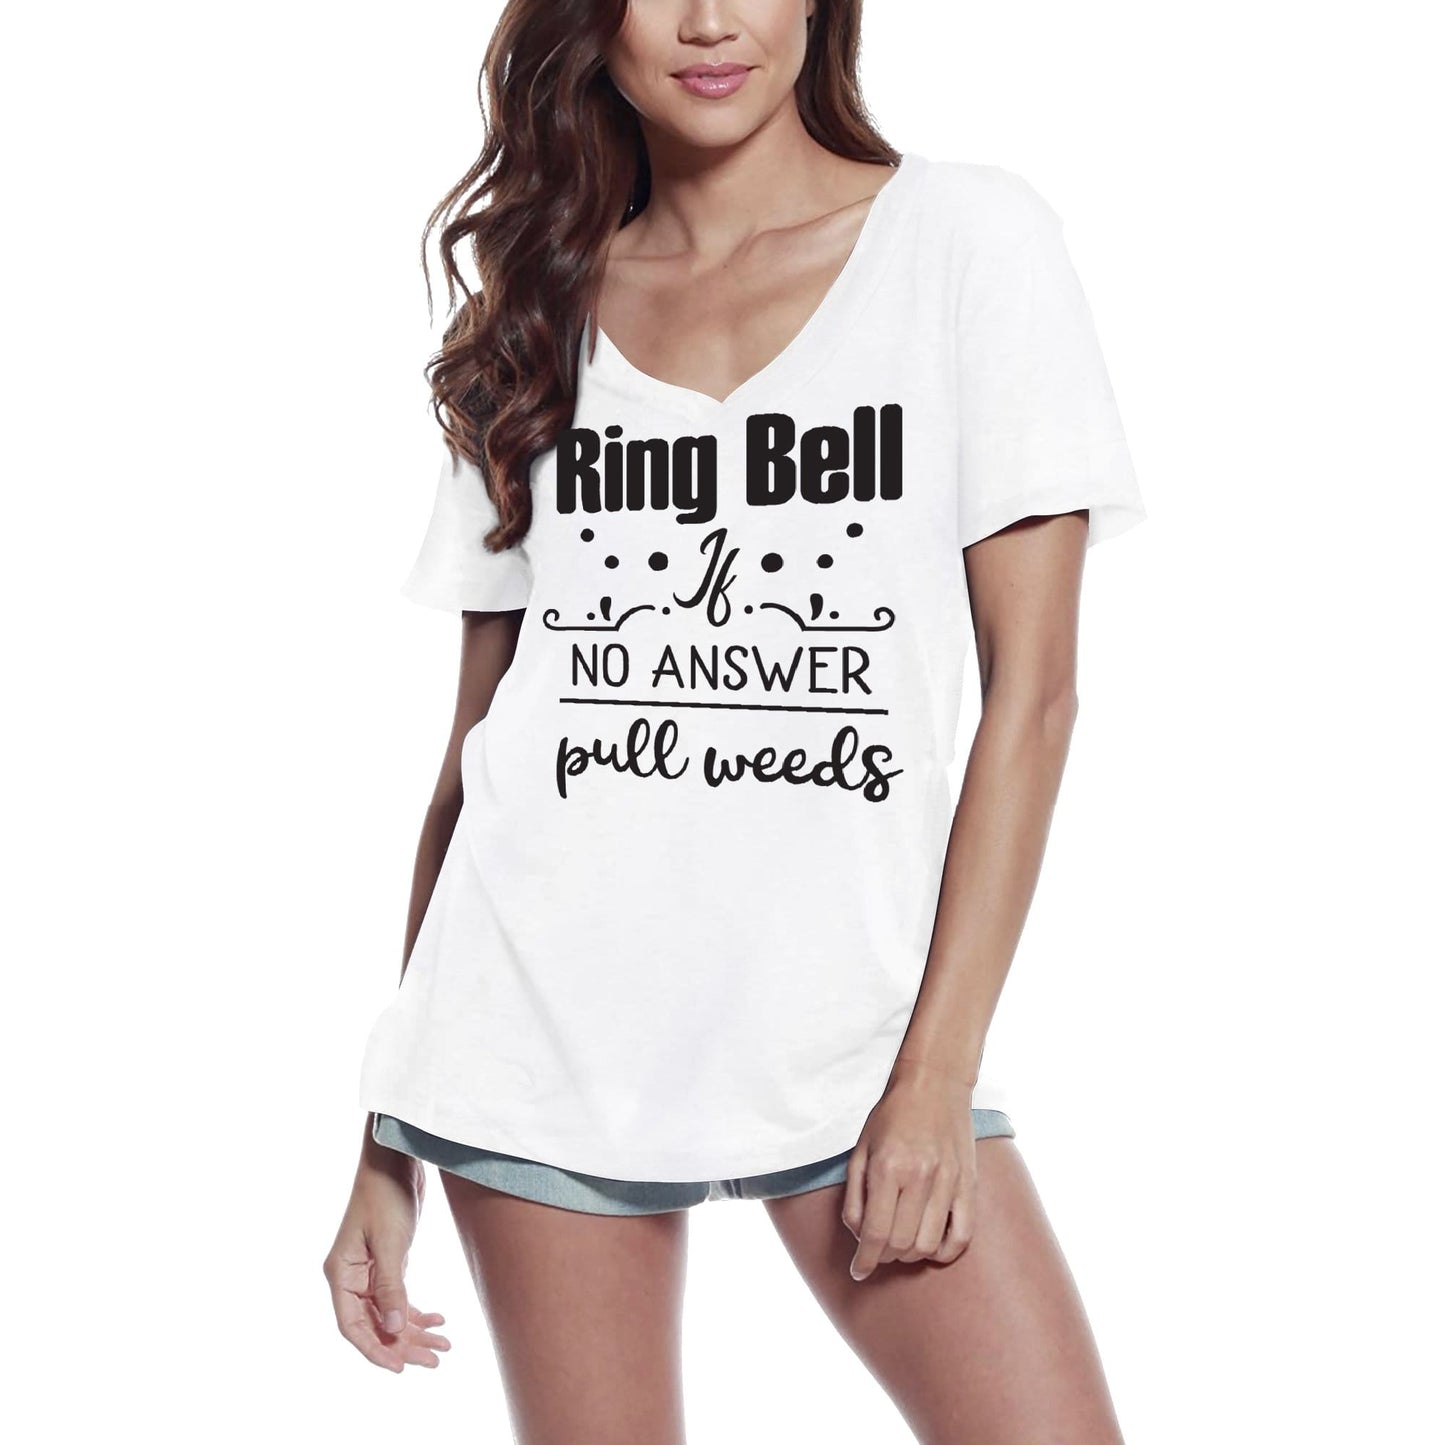 ULTRABASIC Damen T-Shirt Ring Bell If No Answer Pull Weeds – Kurzarm-T-Shirt-Oberteile